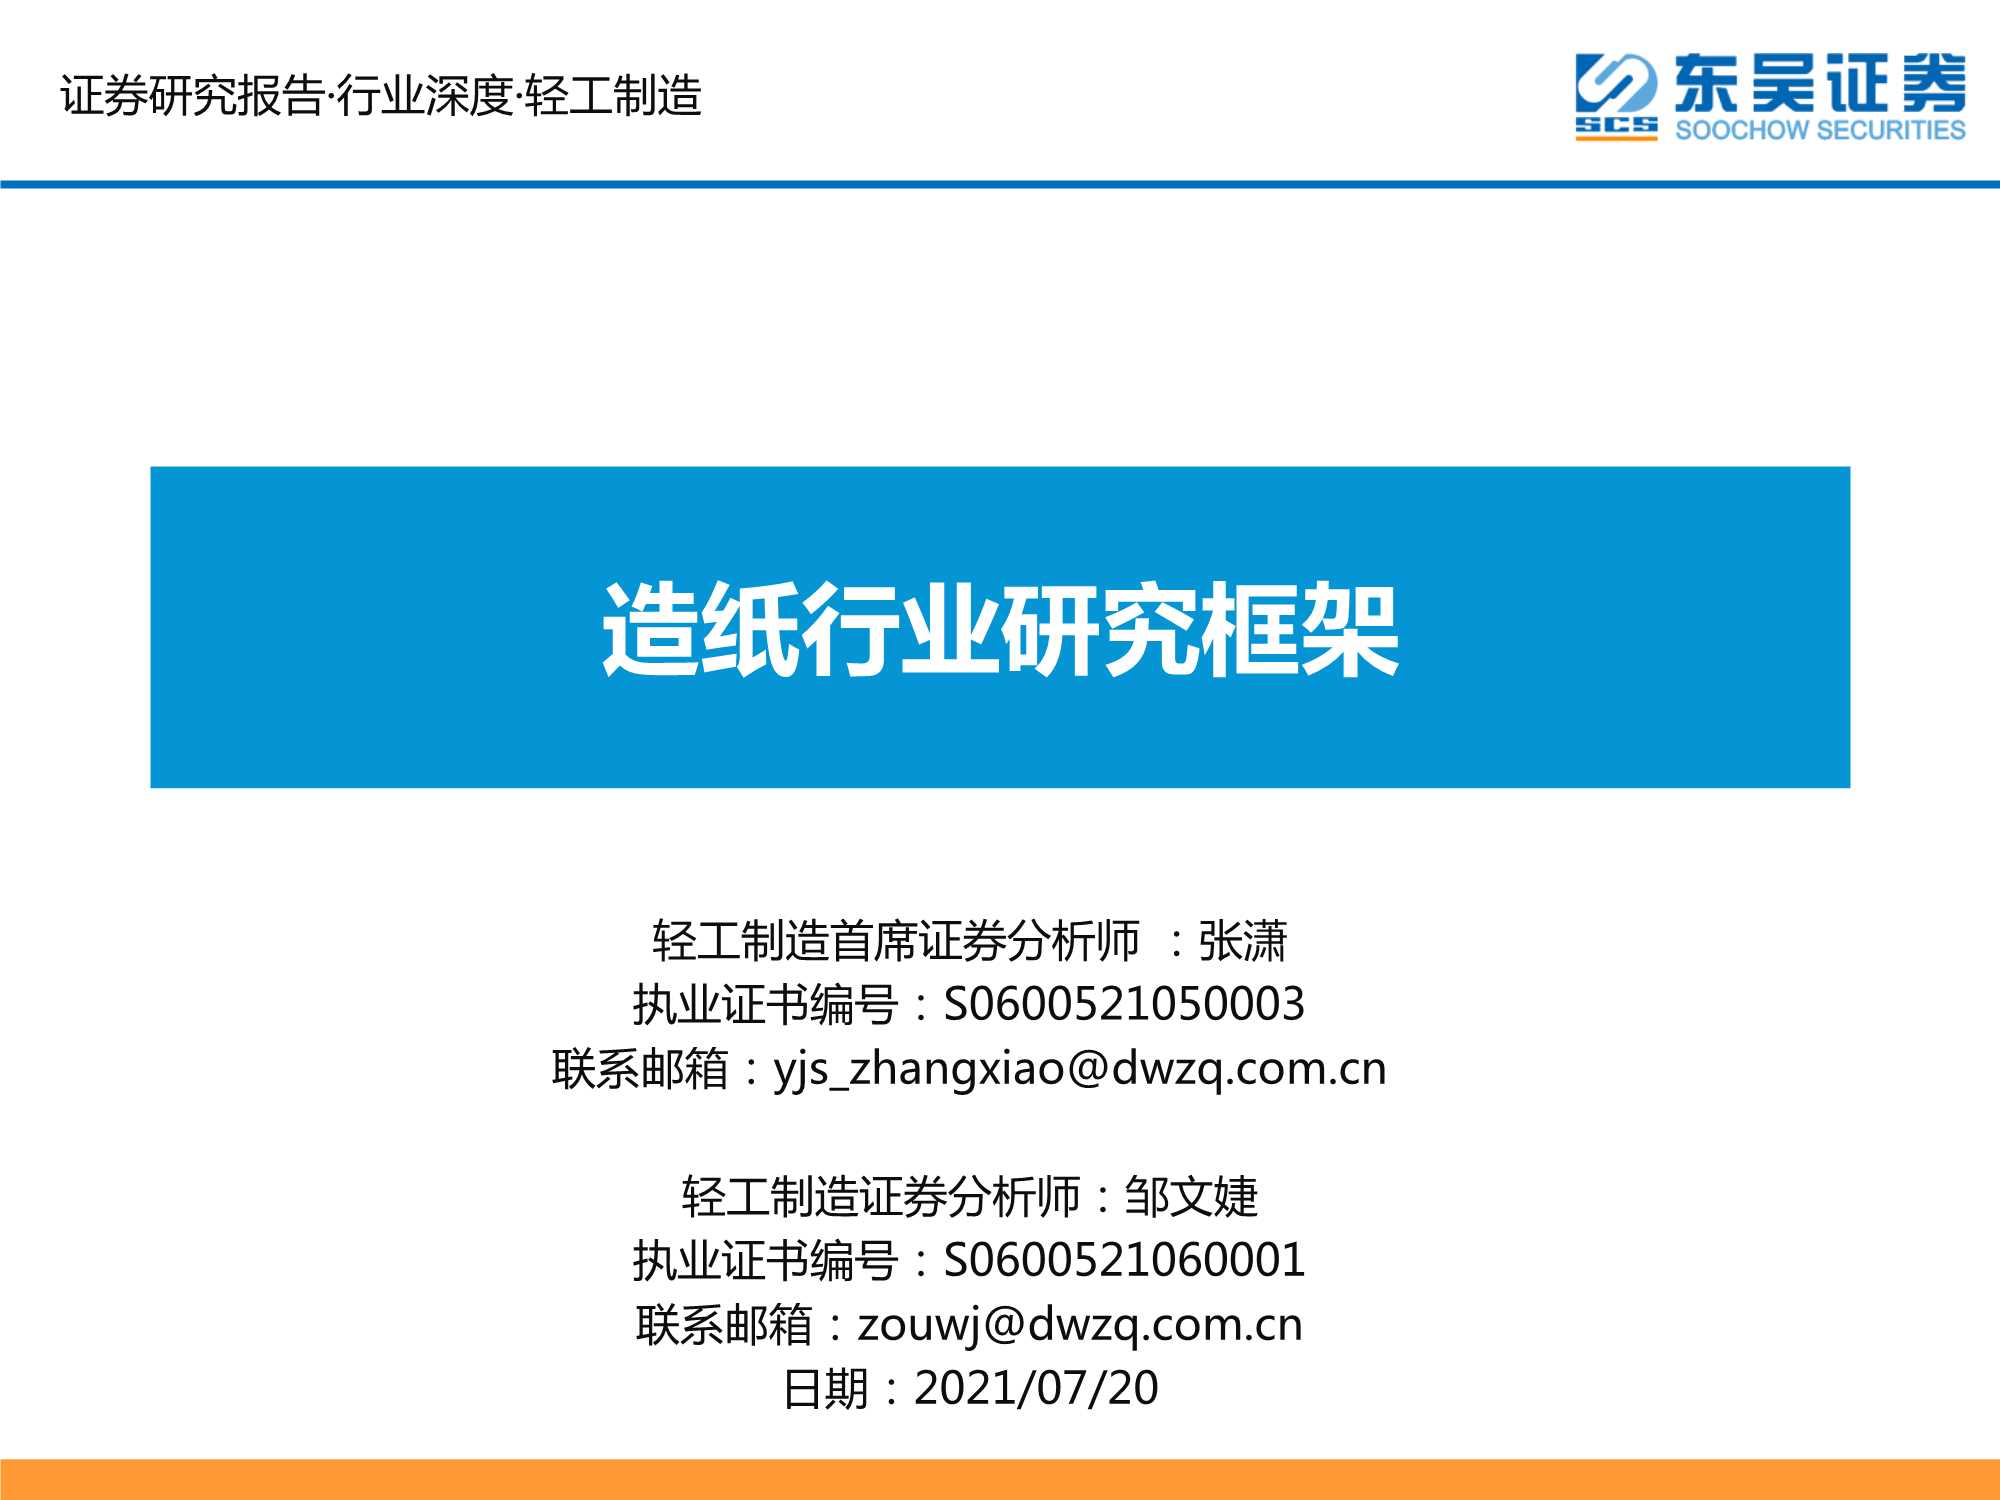 东吴证券-造纸行业研究框架-20210720-34页